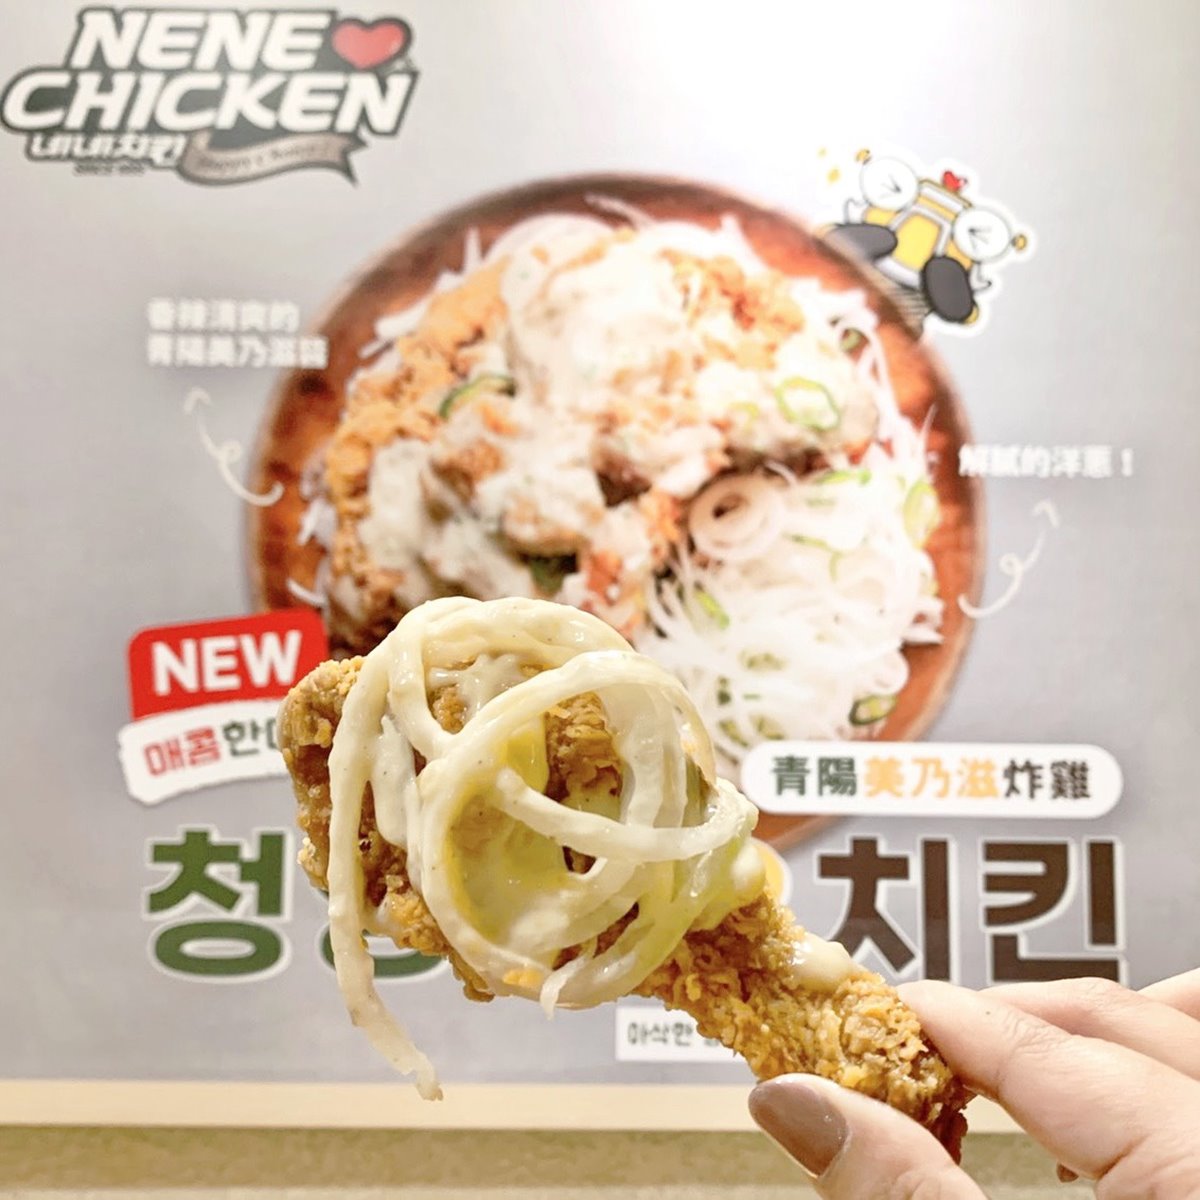 嗜辣控要吃！韓國賣破300萬份NENE CHICKEN「青陽美乃滋炸雞」，全台限量開賣